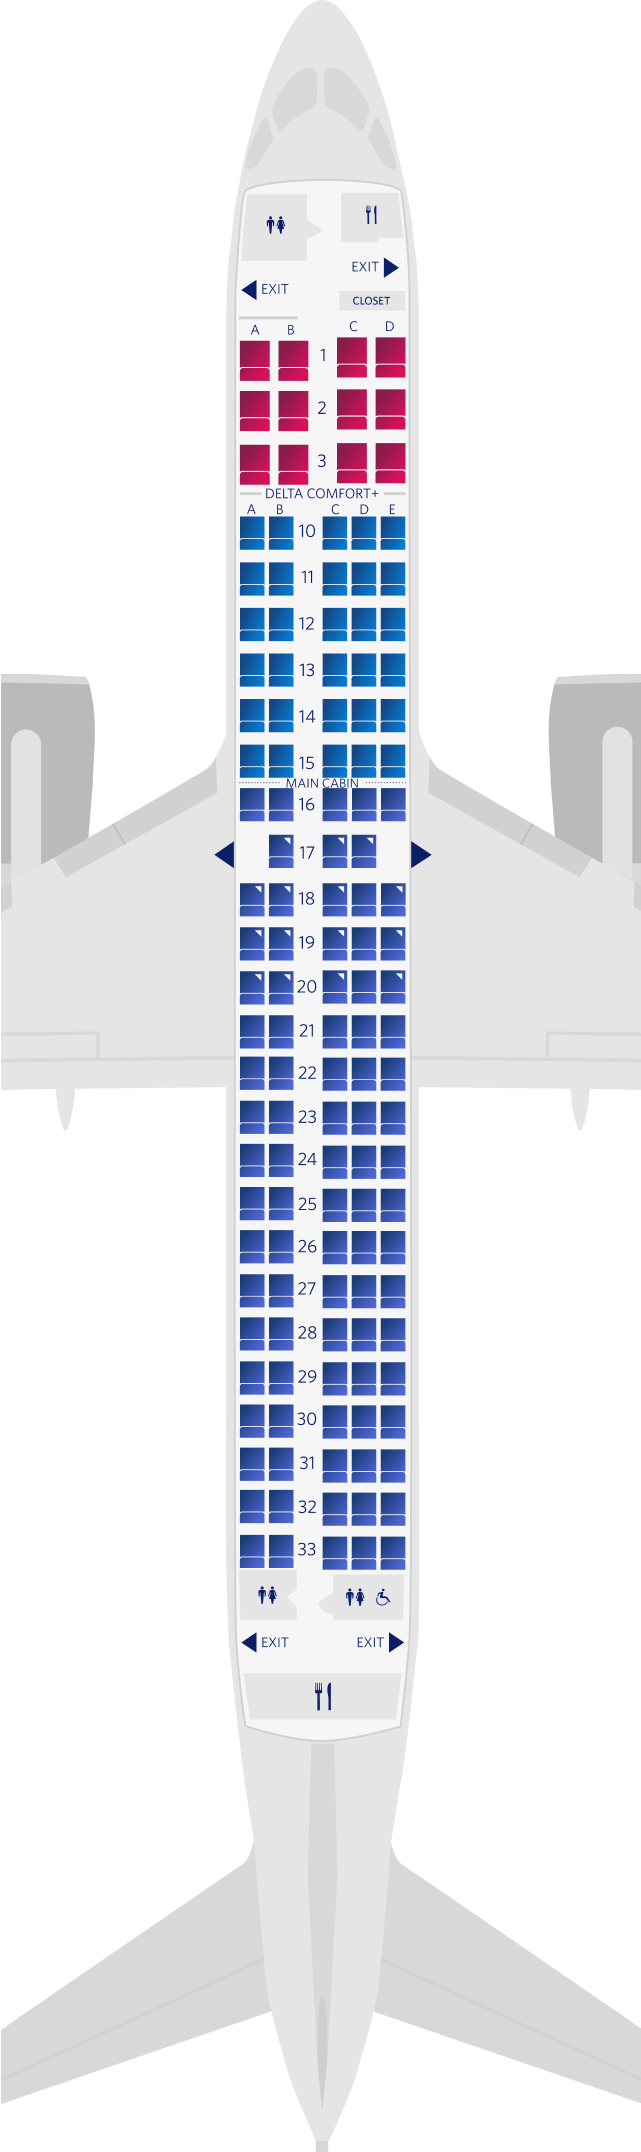 空中巴士A220-300座位圖